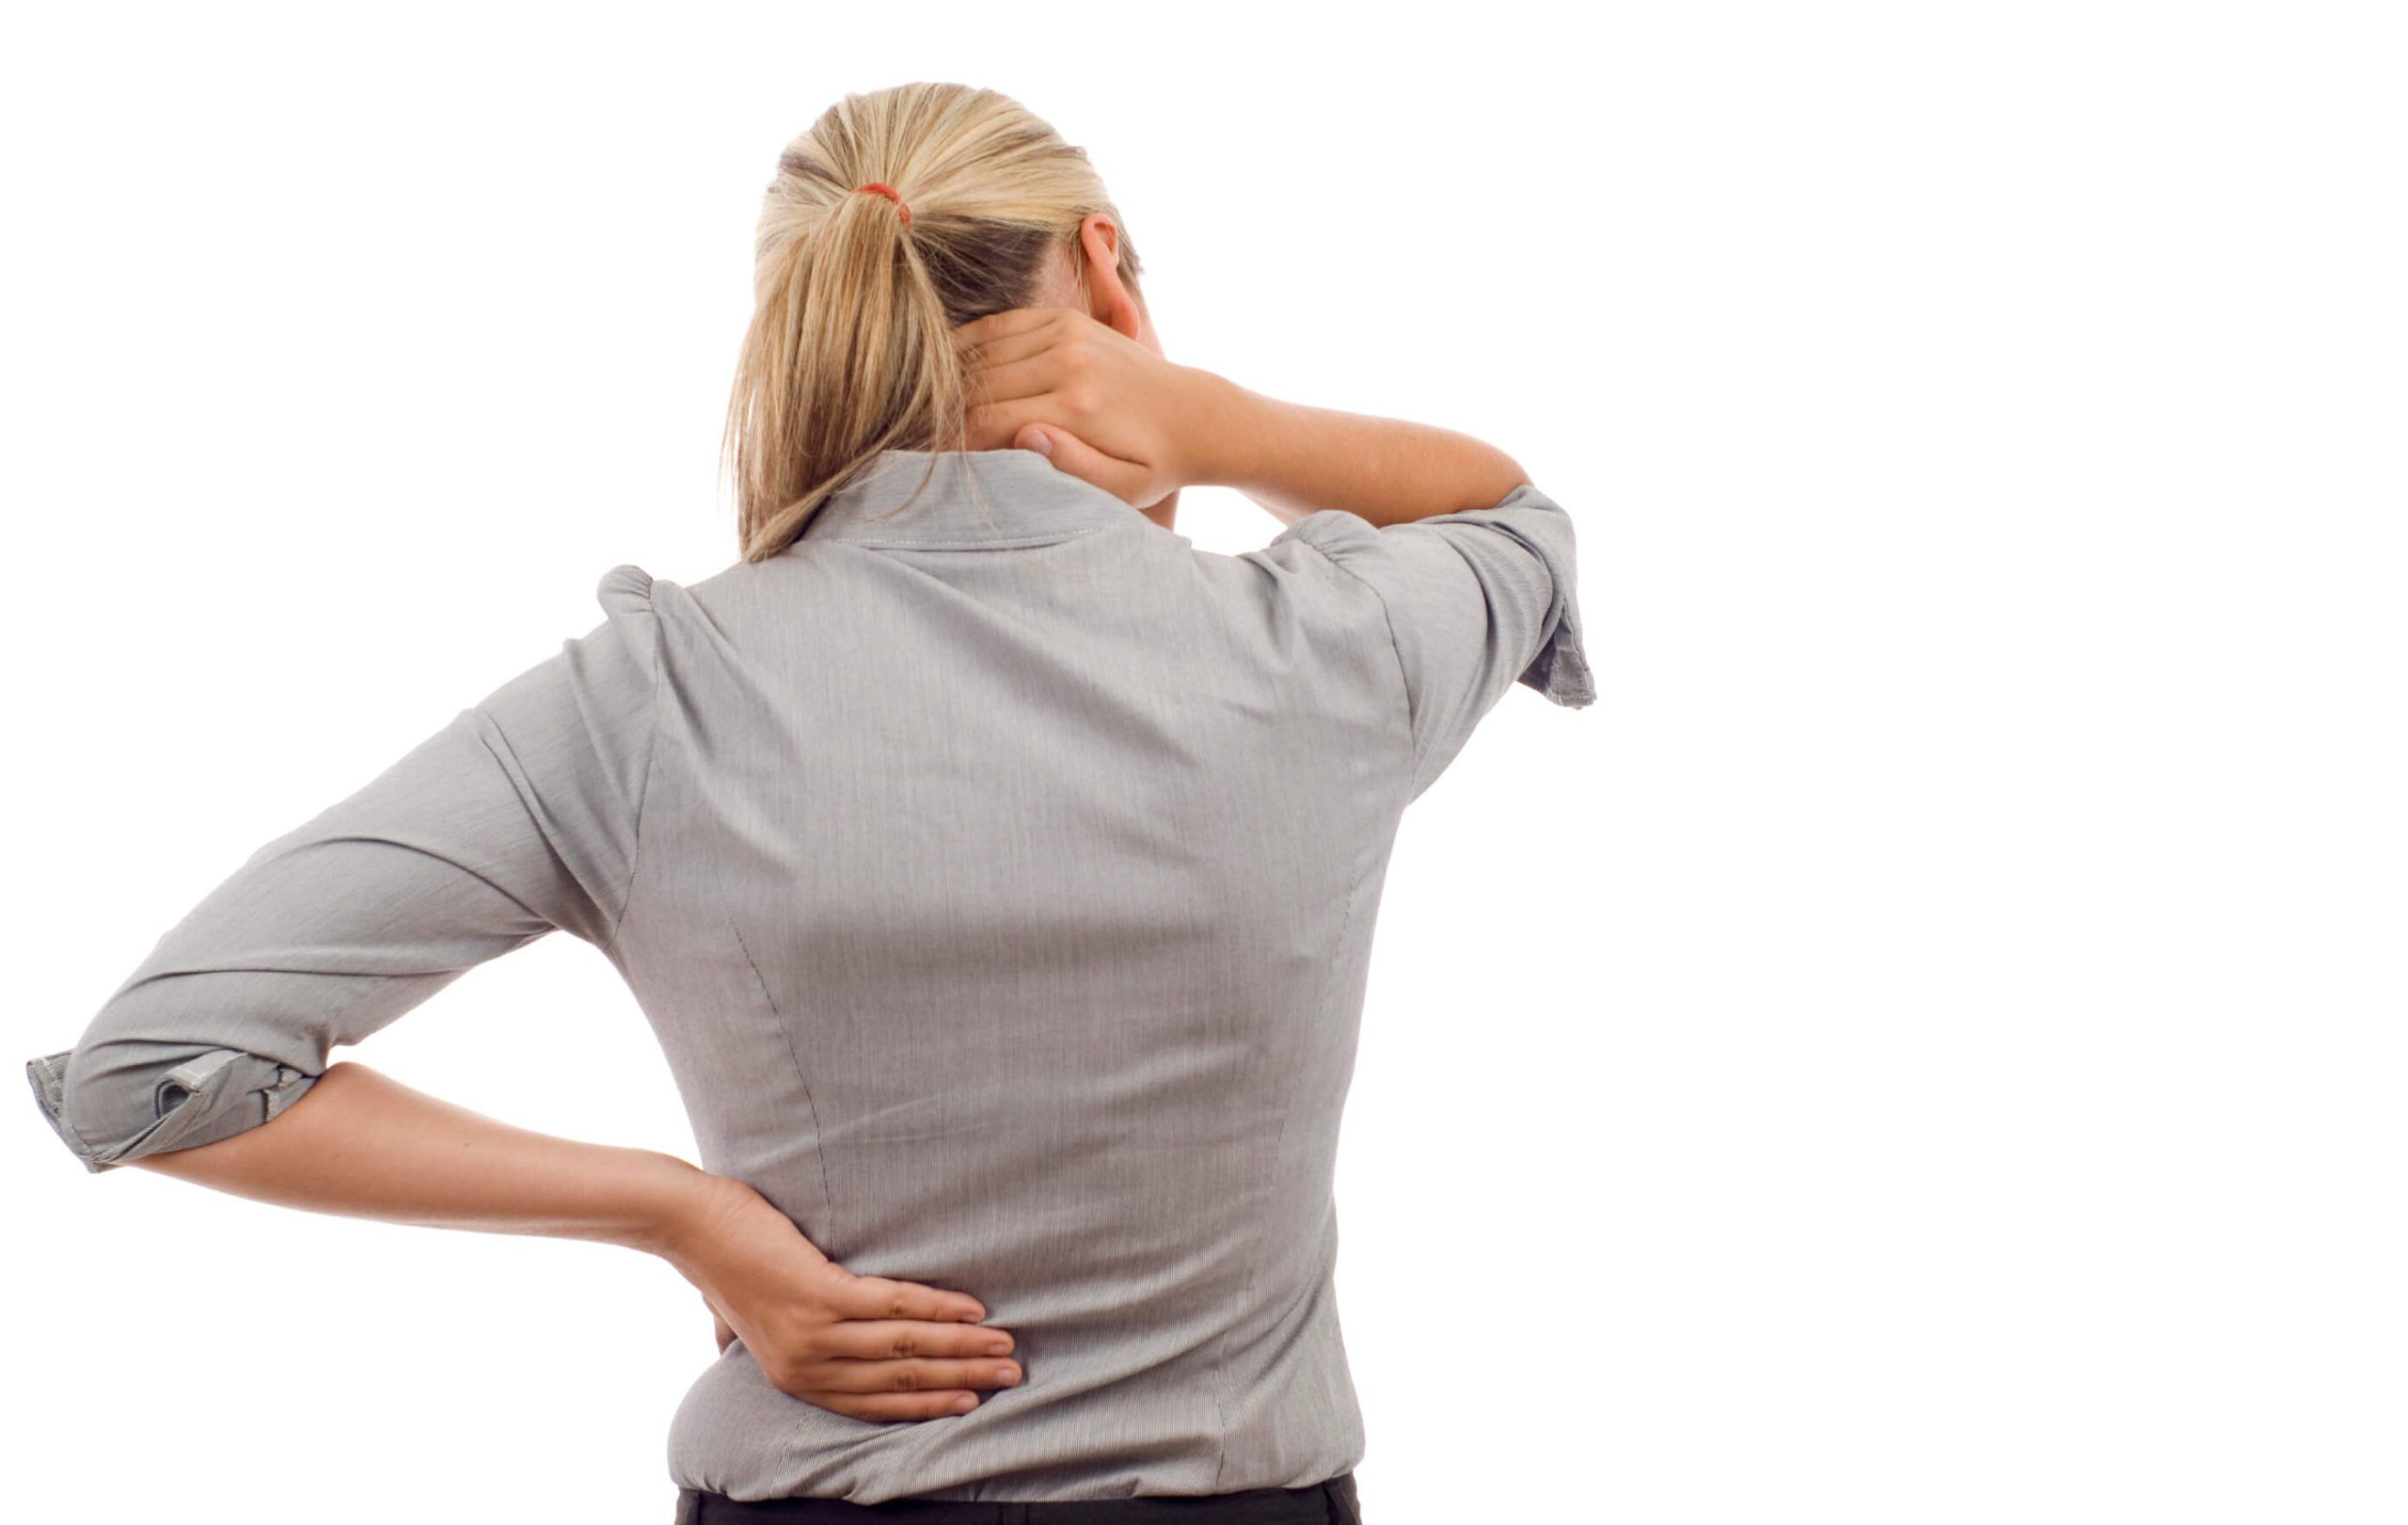 Fibromyalgia with Back Pain